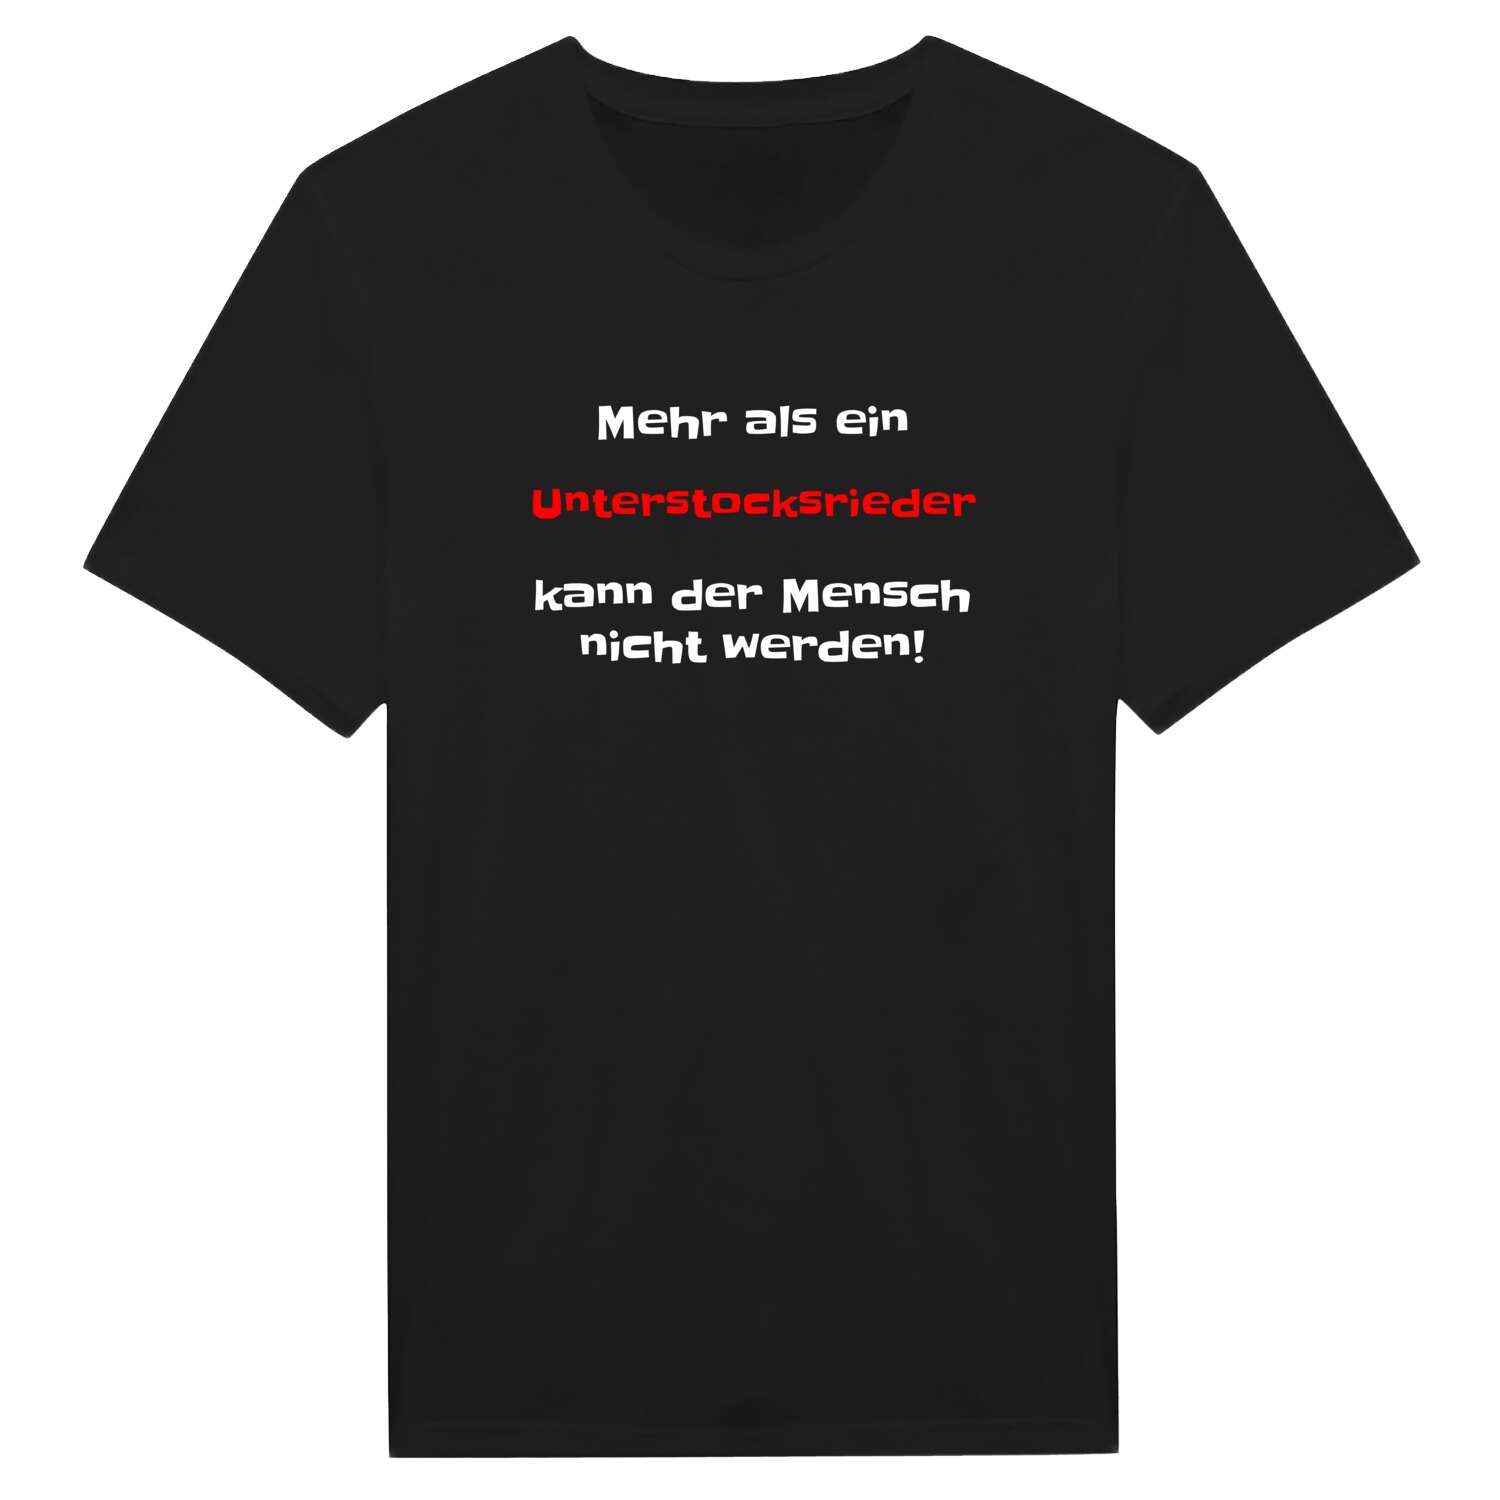 Unterstocksried T-Shirt »Mehr als ein«